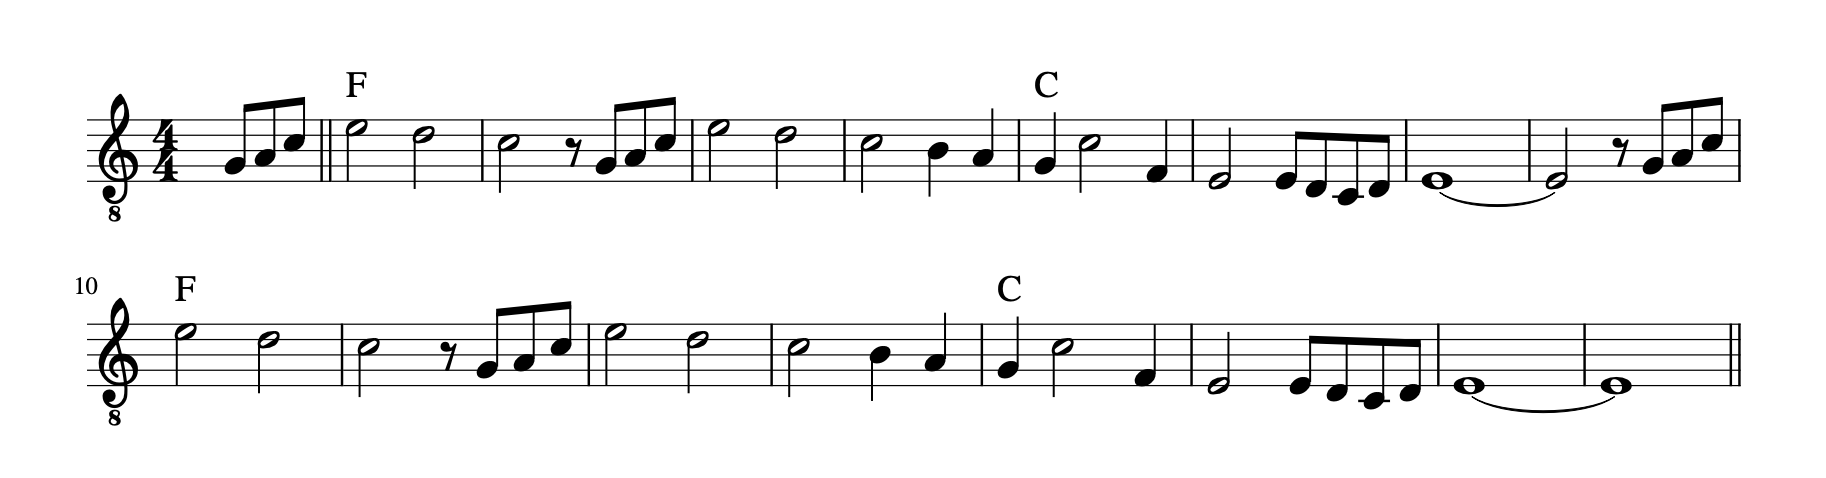 Partitura simplificada para guitarra fácil de la introducción de Entre la espada y la pared de Fito y Fitipaldis